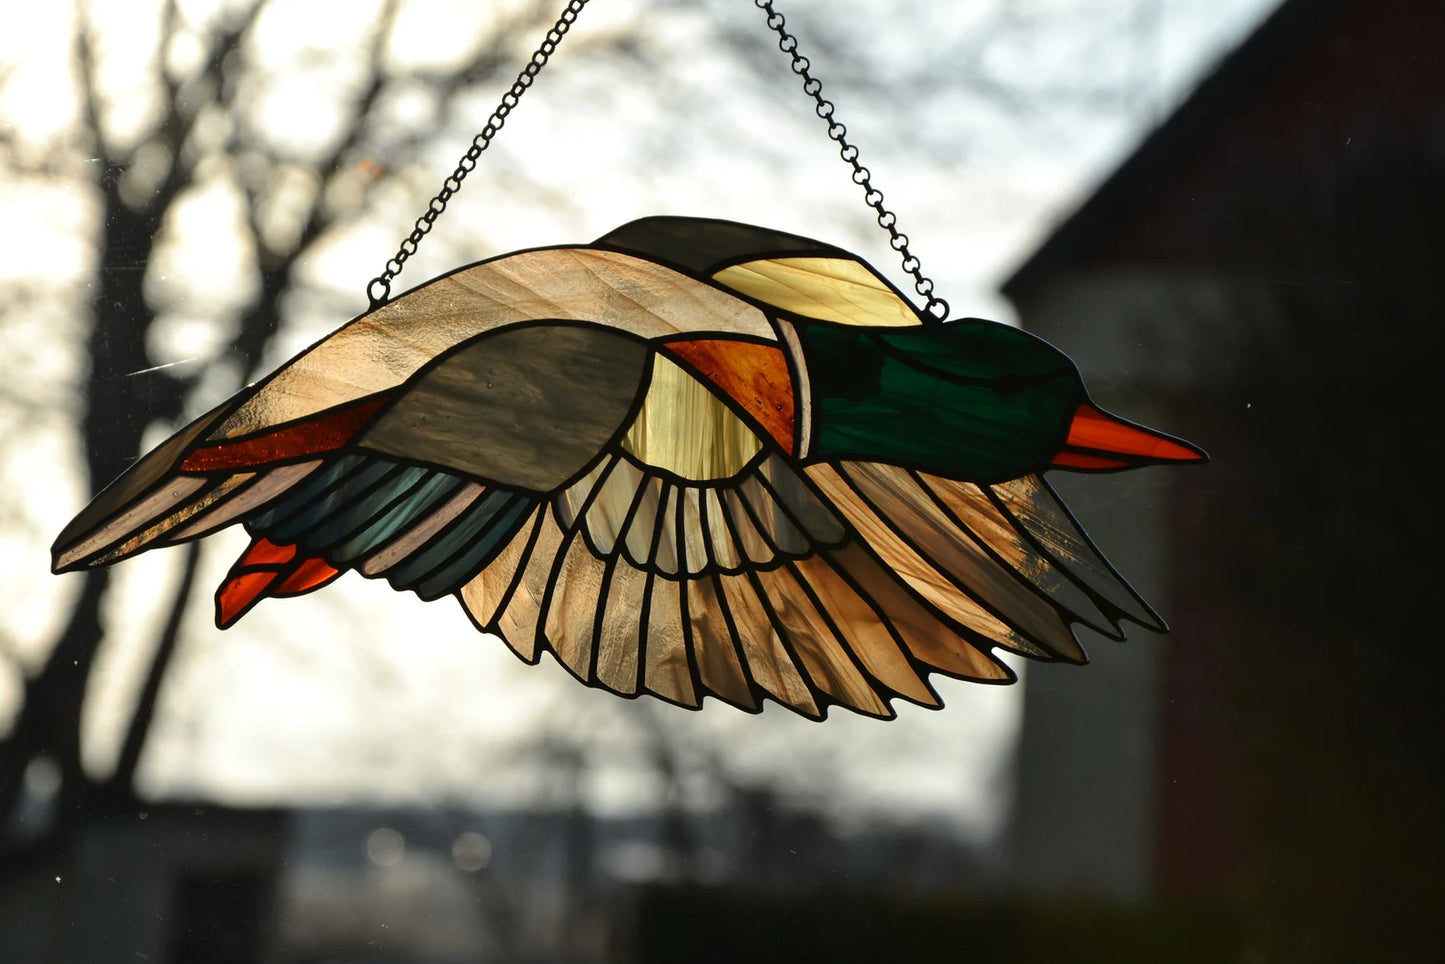 Stained glass suncatcher Flying duck Window hanging sun catcher Glass bird Stain glass art Mother day gift Wall decor Beautiful bird Garden